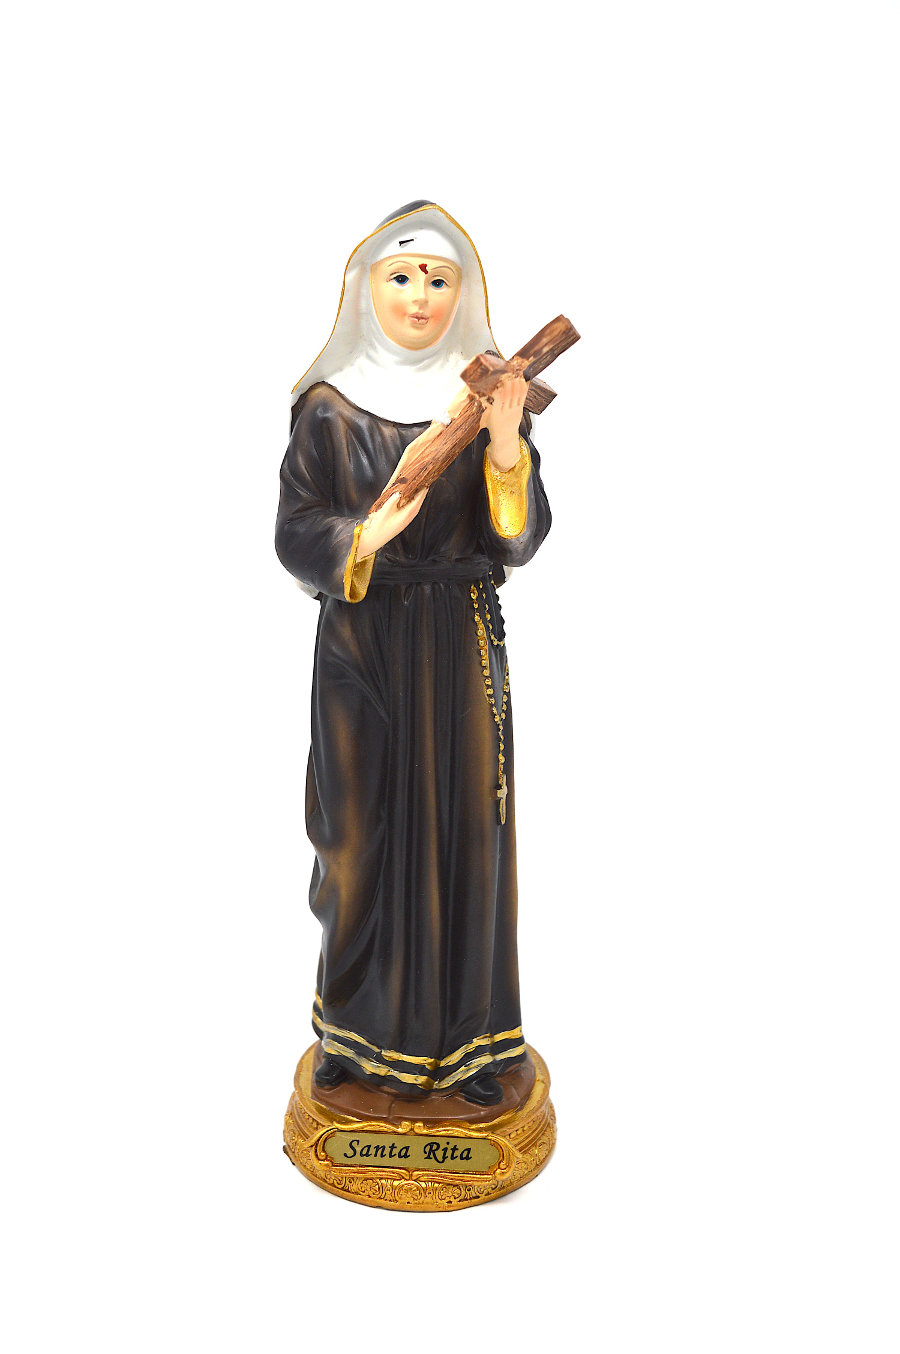 Statua Santa Rita Paben 1503